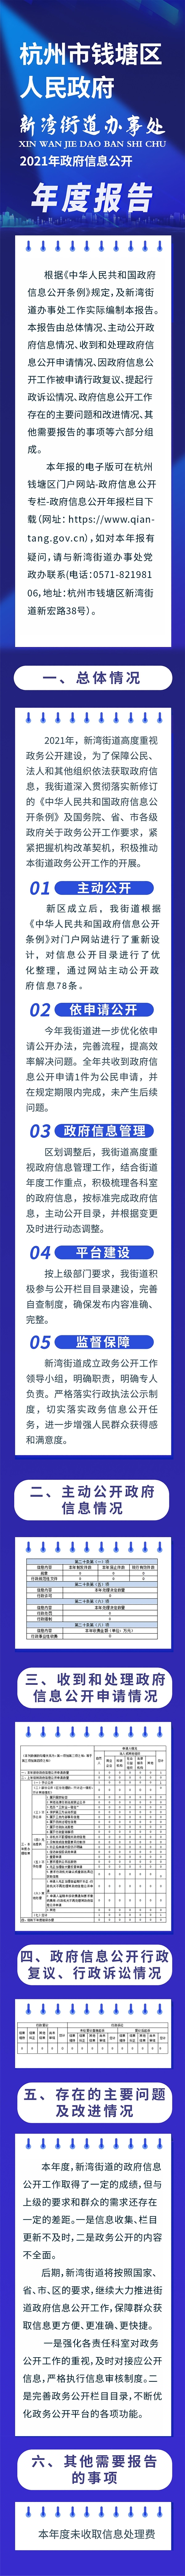 杭州市钱塘区人民政府新湾街道办事处2021年政府信息公开年度报告.jpg